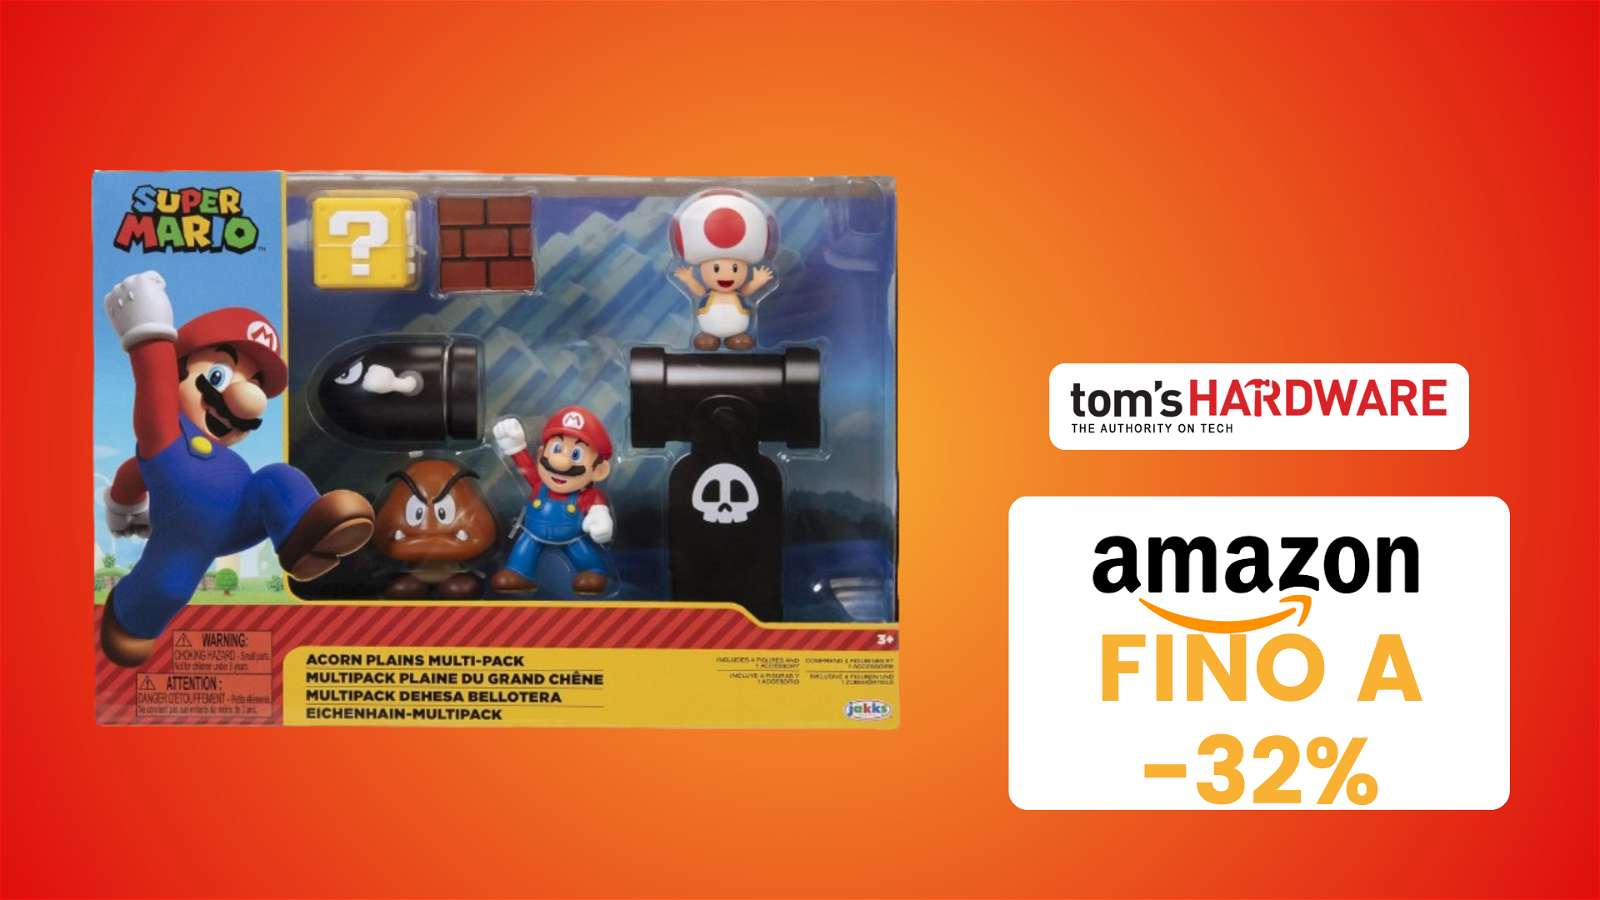 Immagine di Mar10 Day, una valanga di offerte a tema Super Mario su Amazon!